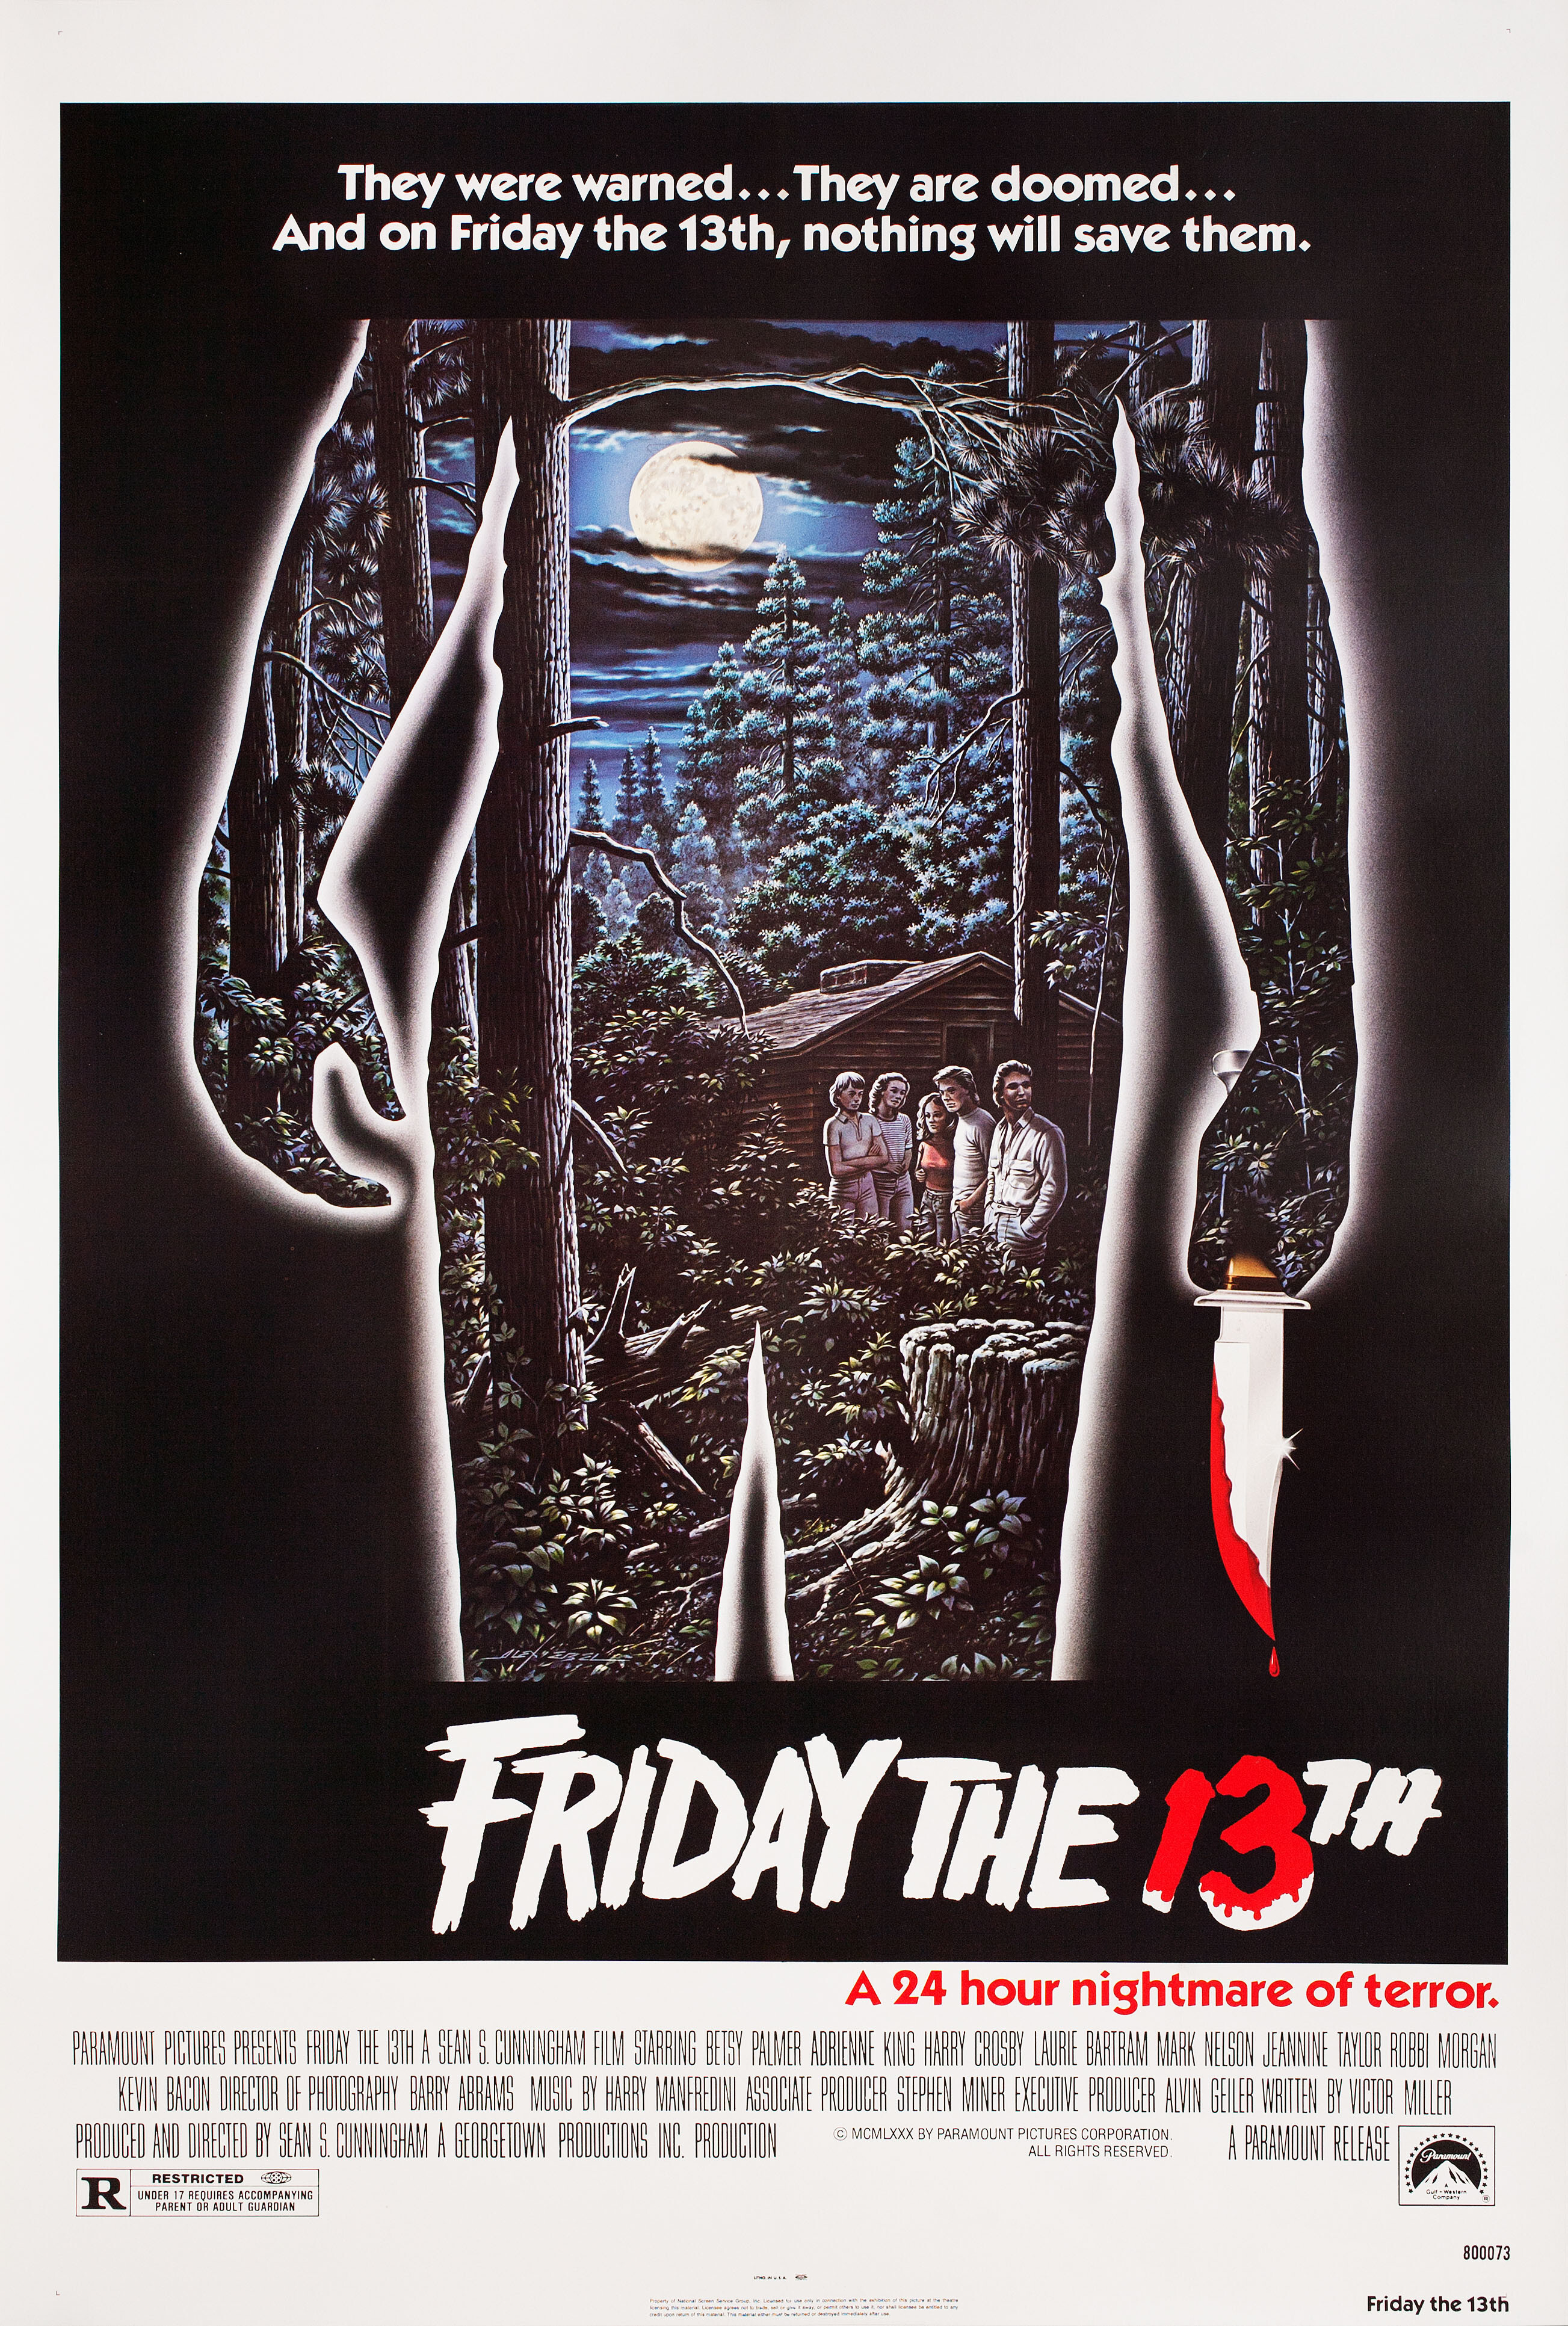 Пятница 13-е (Friday the 13th, 1980), режиссёр Шон С. Каннингем, американский постер к фильму, автор Алекс Эбель (ужасы, 1980 год)